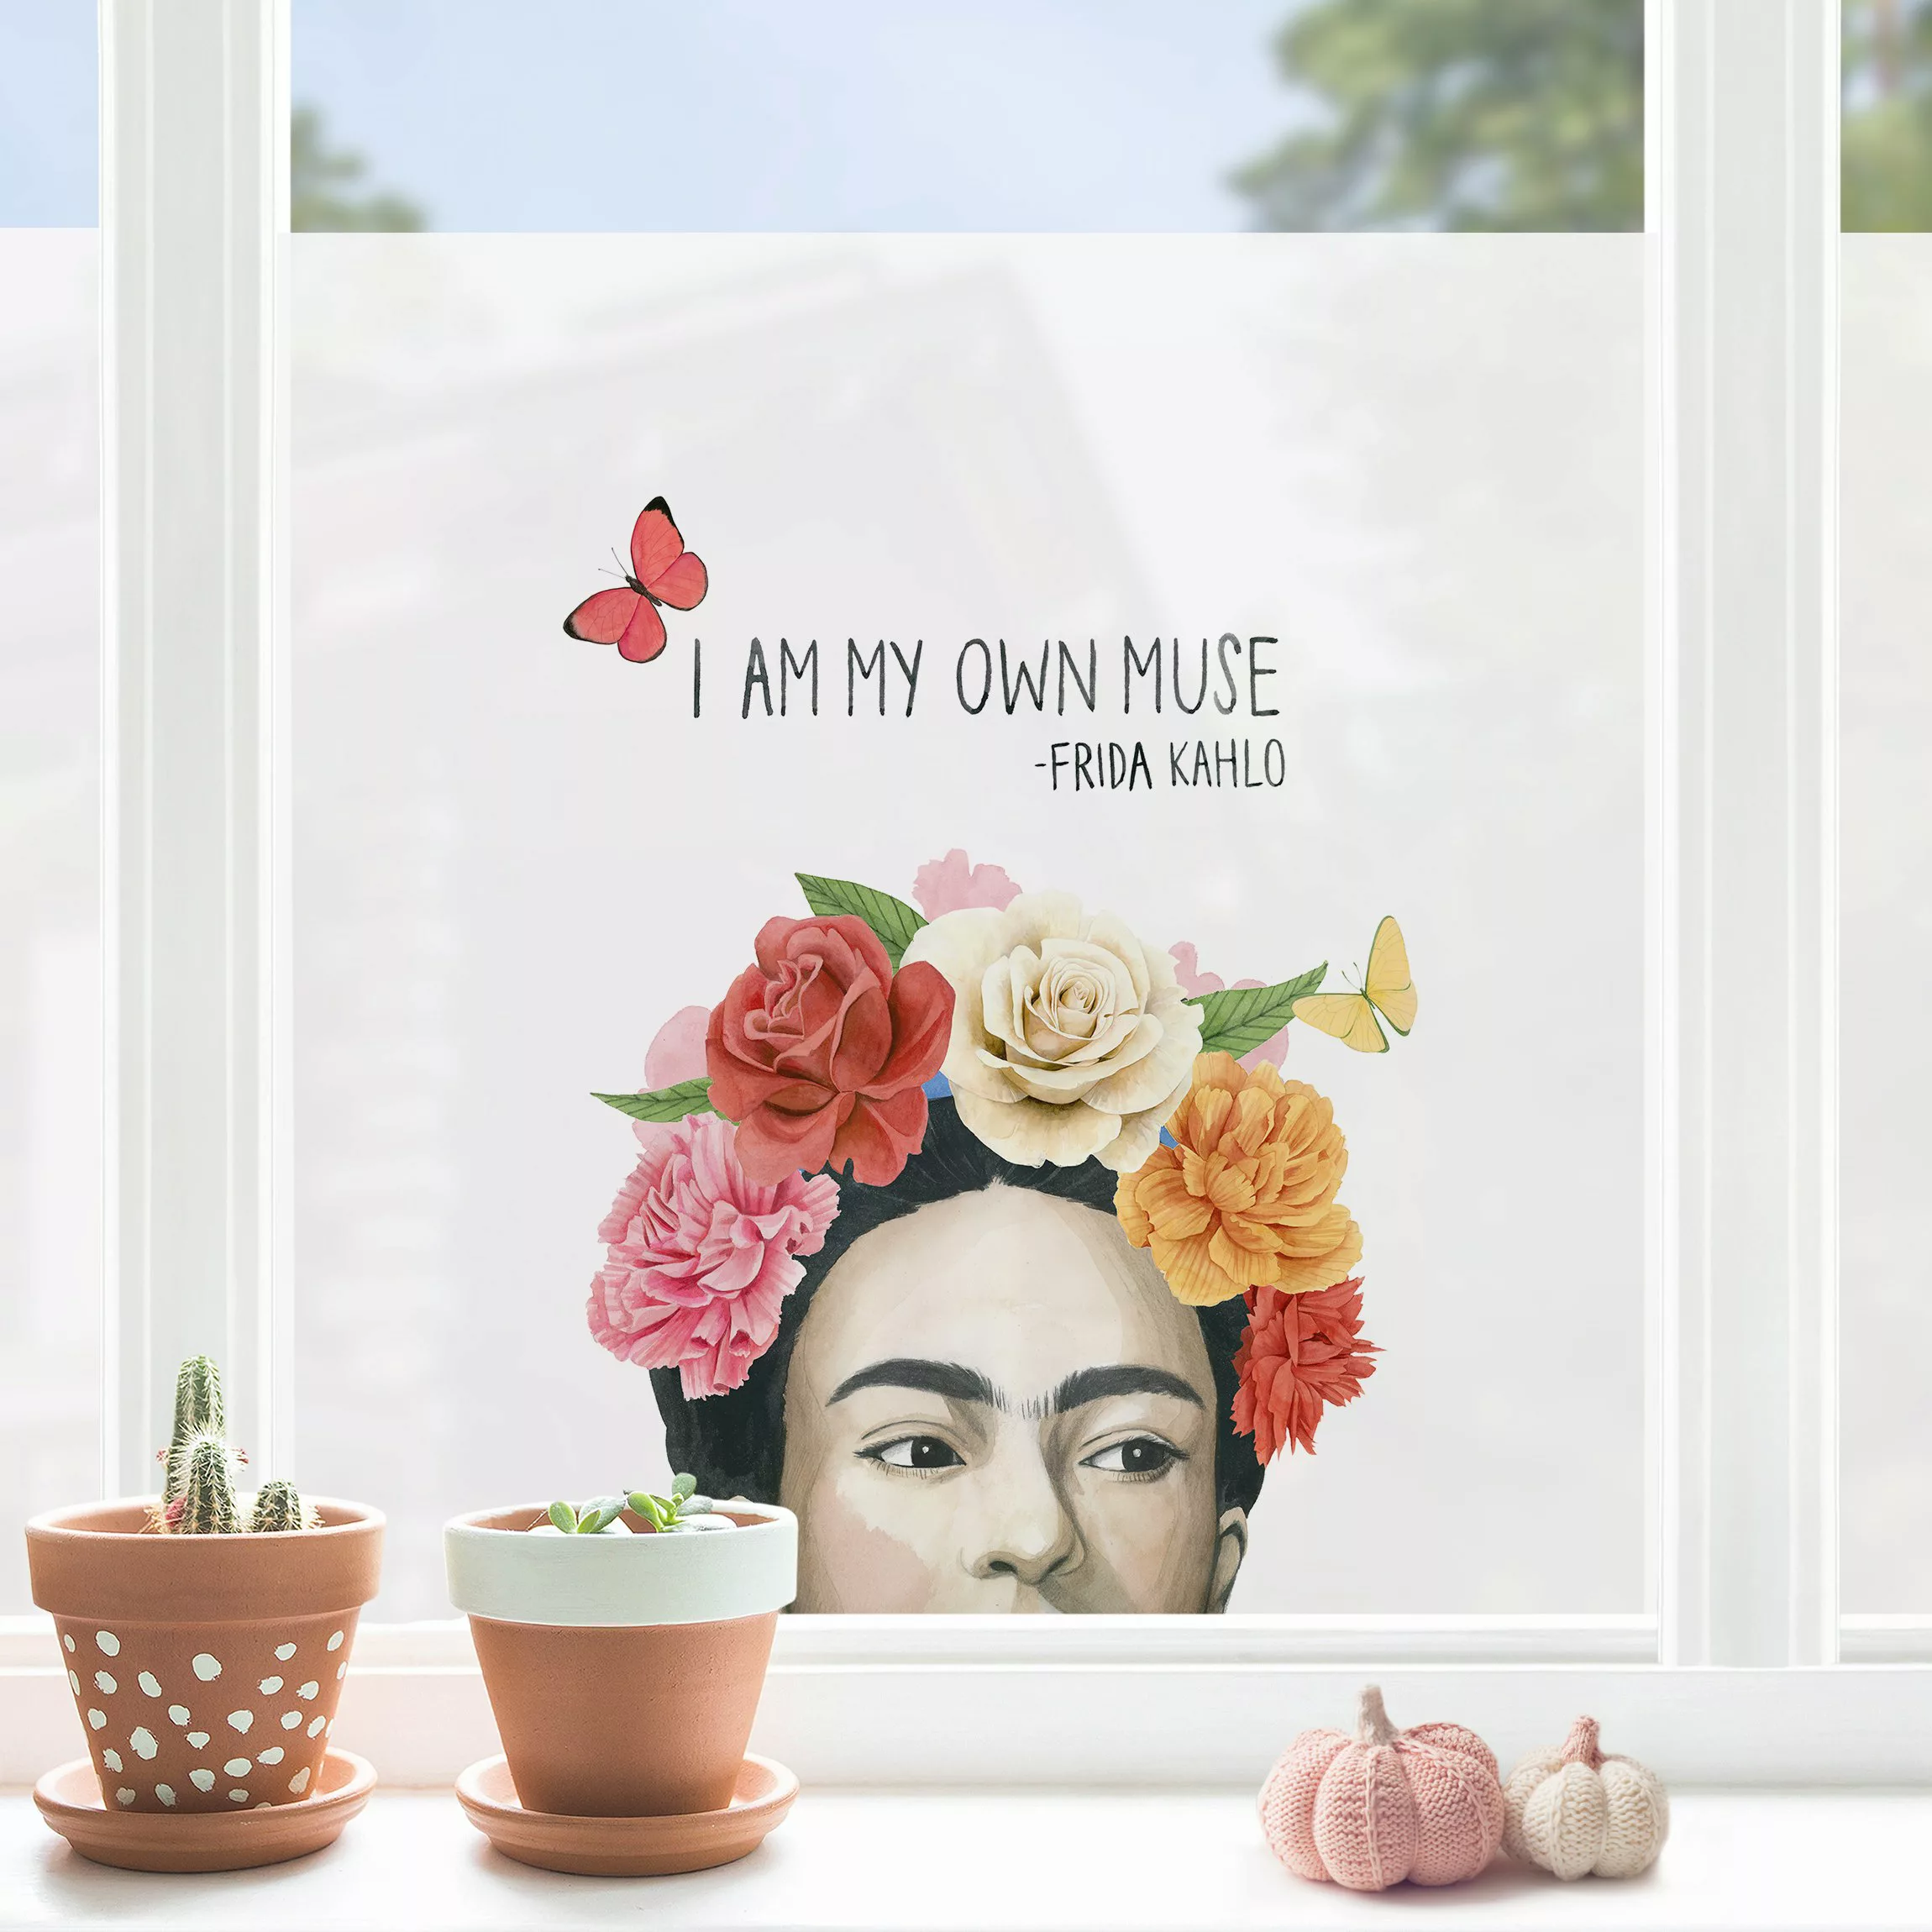 Fensterfolie Fridas Gedanken - Muse günstig online kaufen